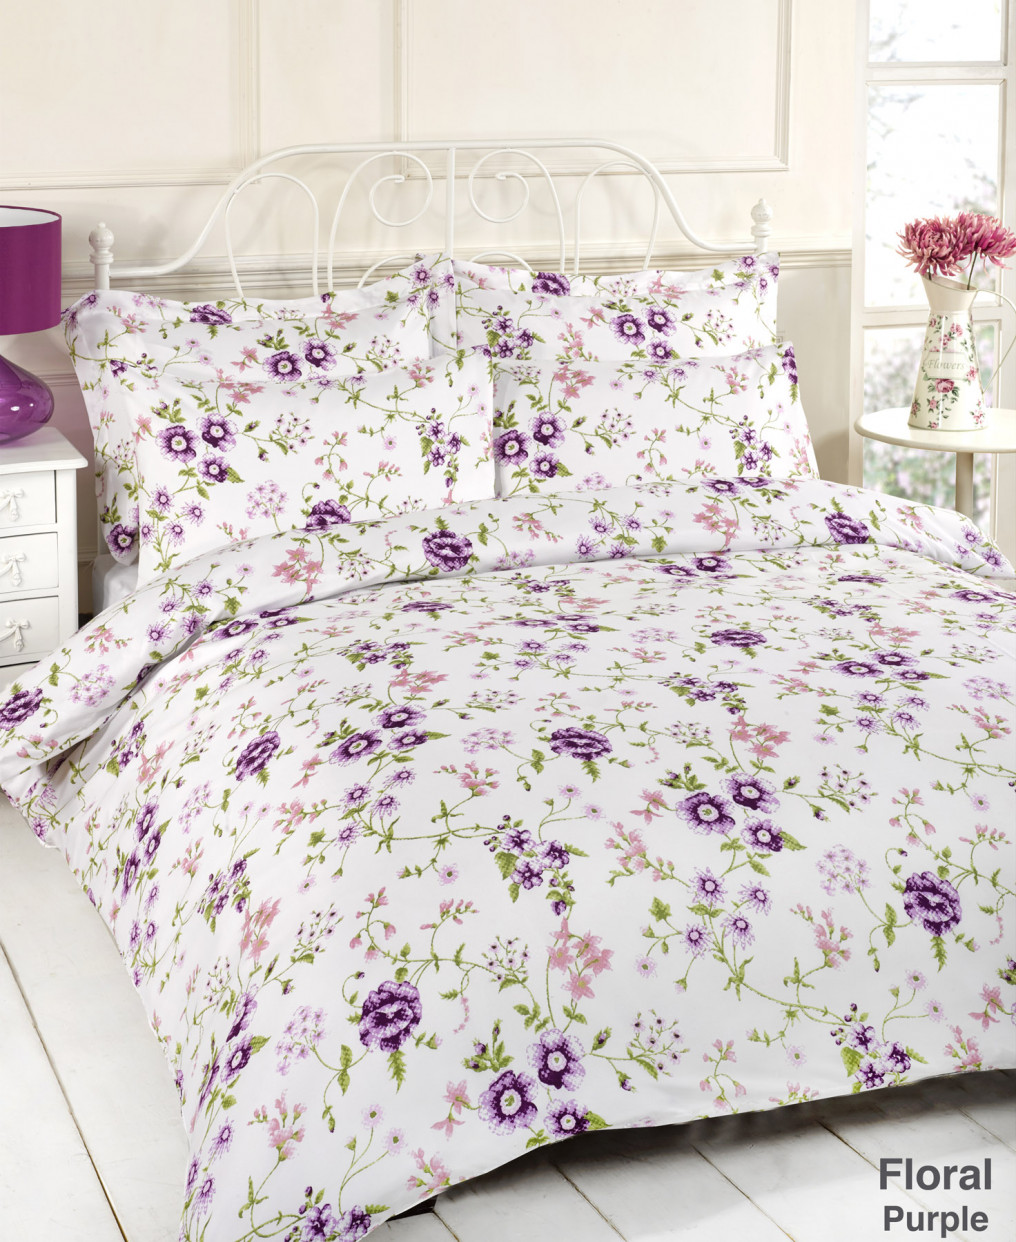 Floral 5PC Duvet Complete Bedding Set - King Size>